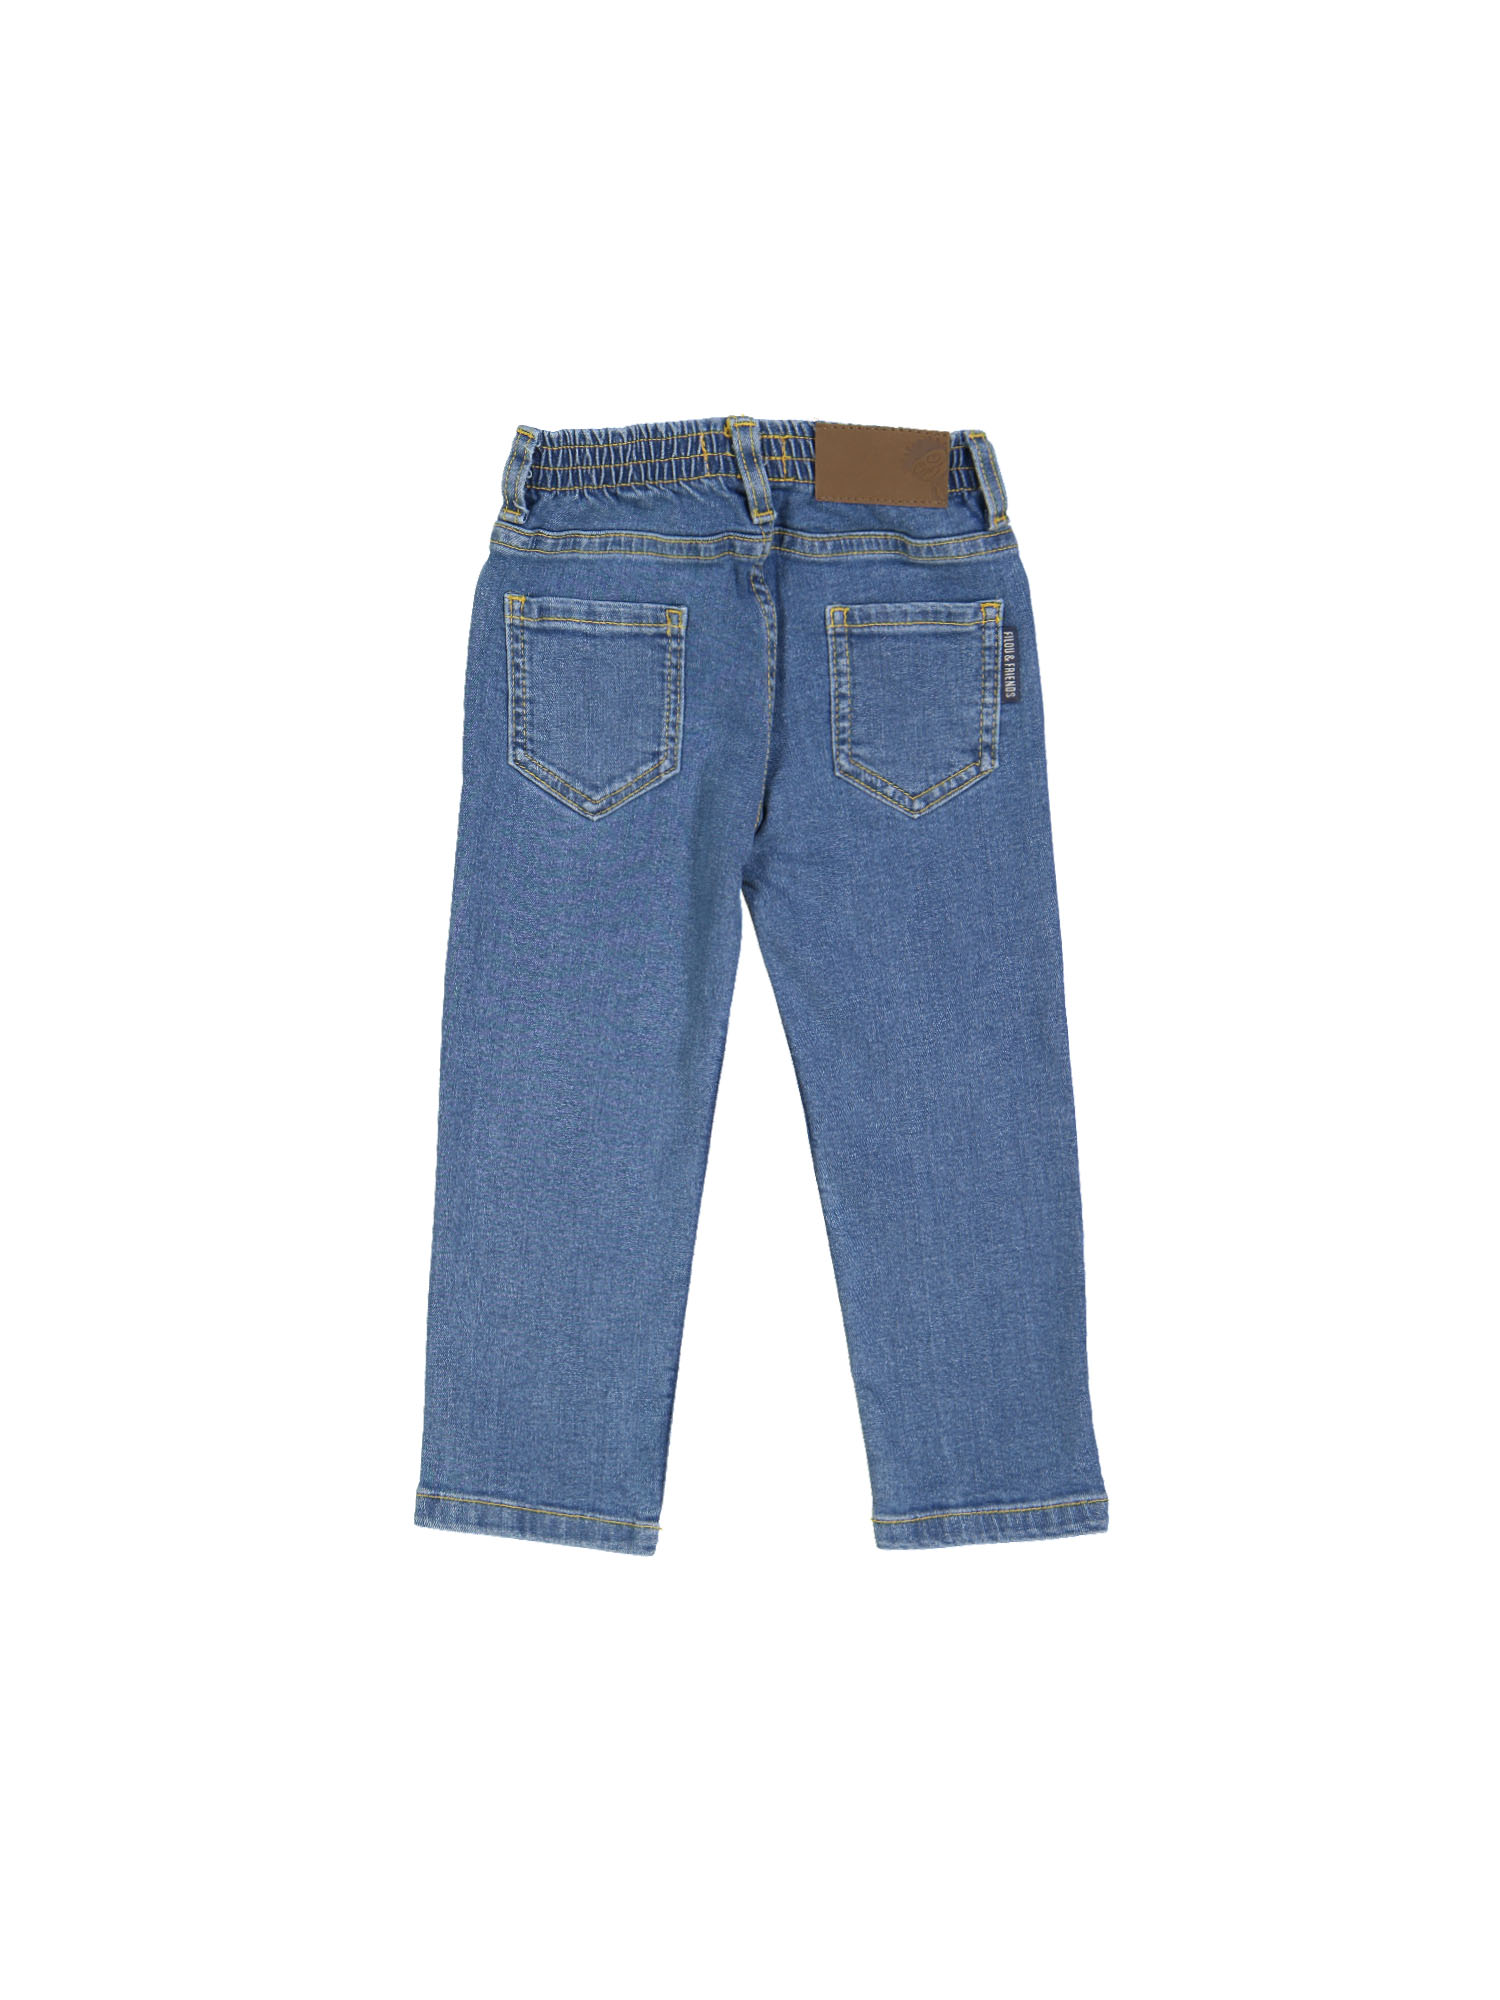 jeans regular bleach blauw rekker 09j